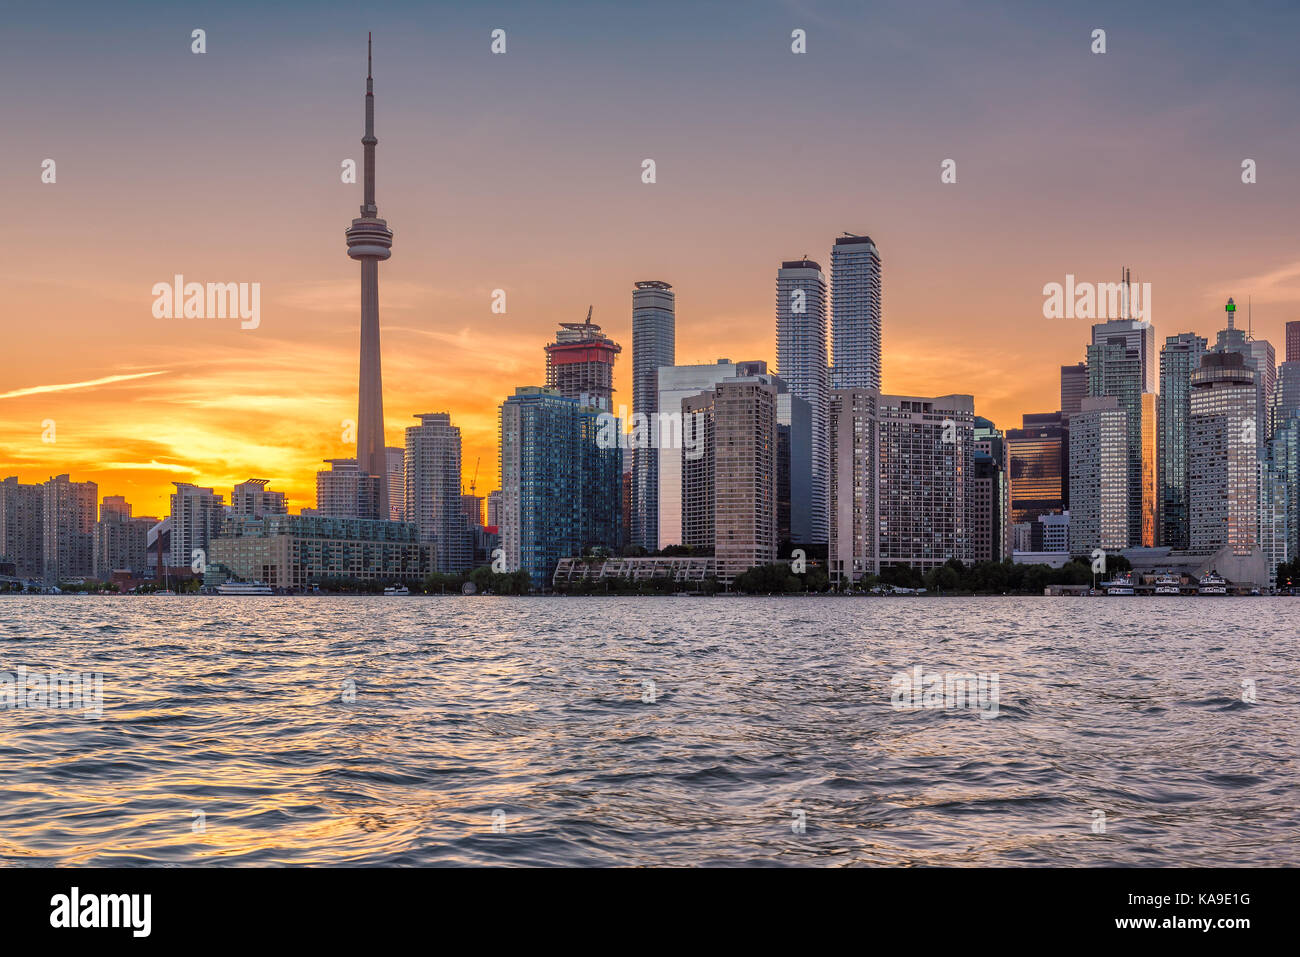 Beautiful Toronto City skyline - Toronto, Ontario, Canada. Stock Photo